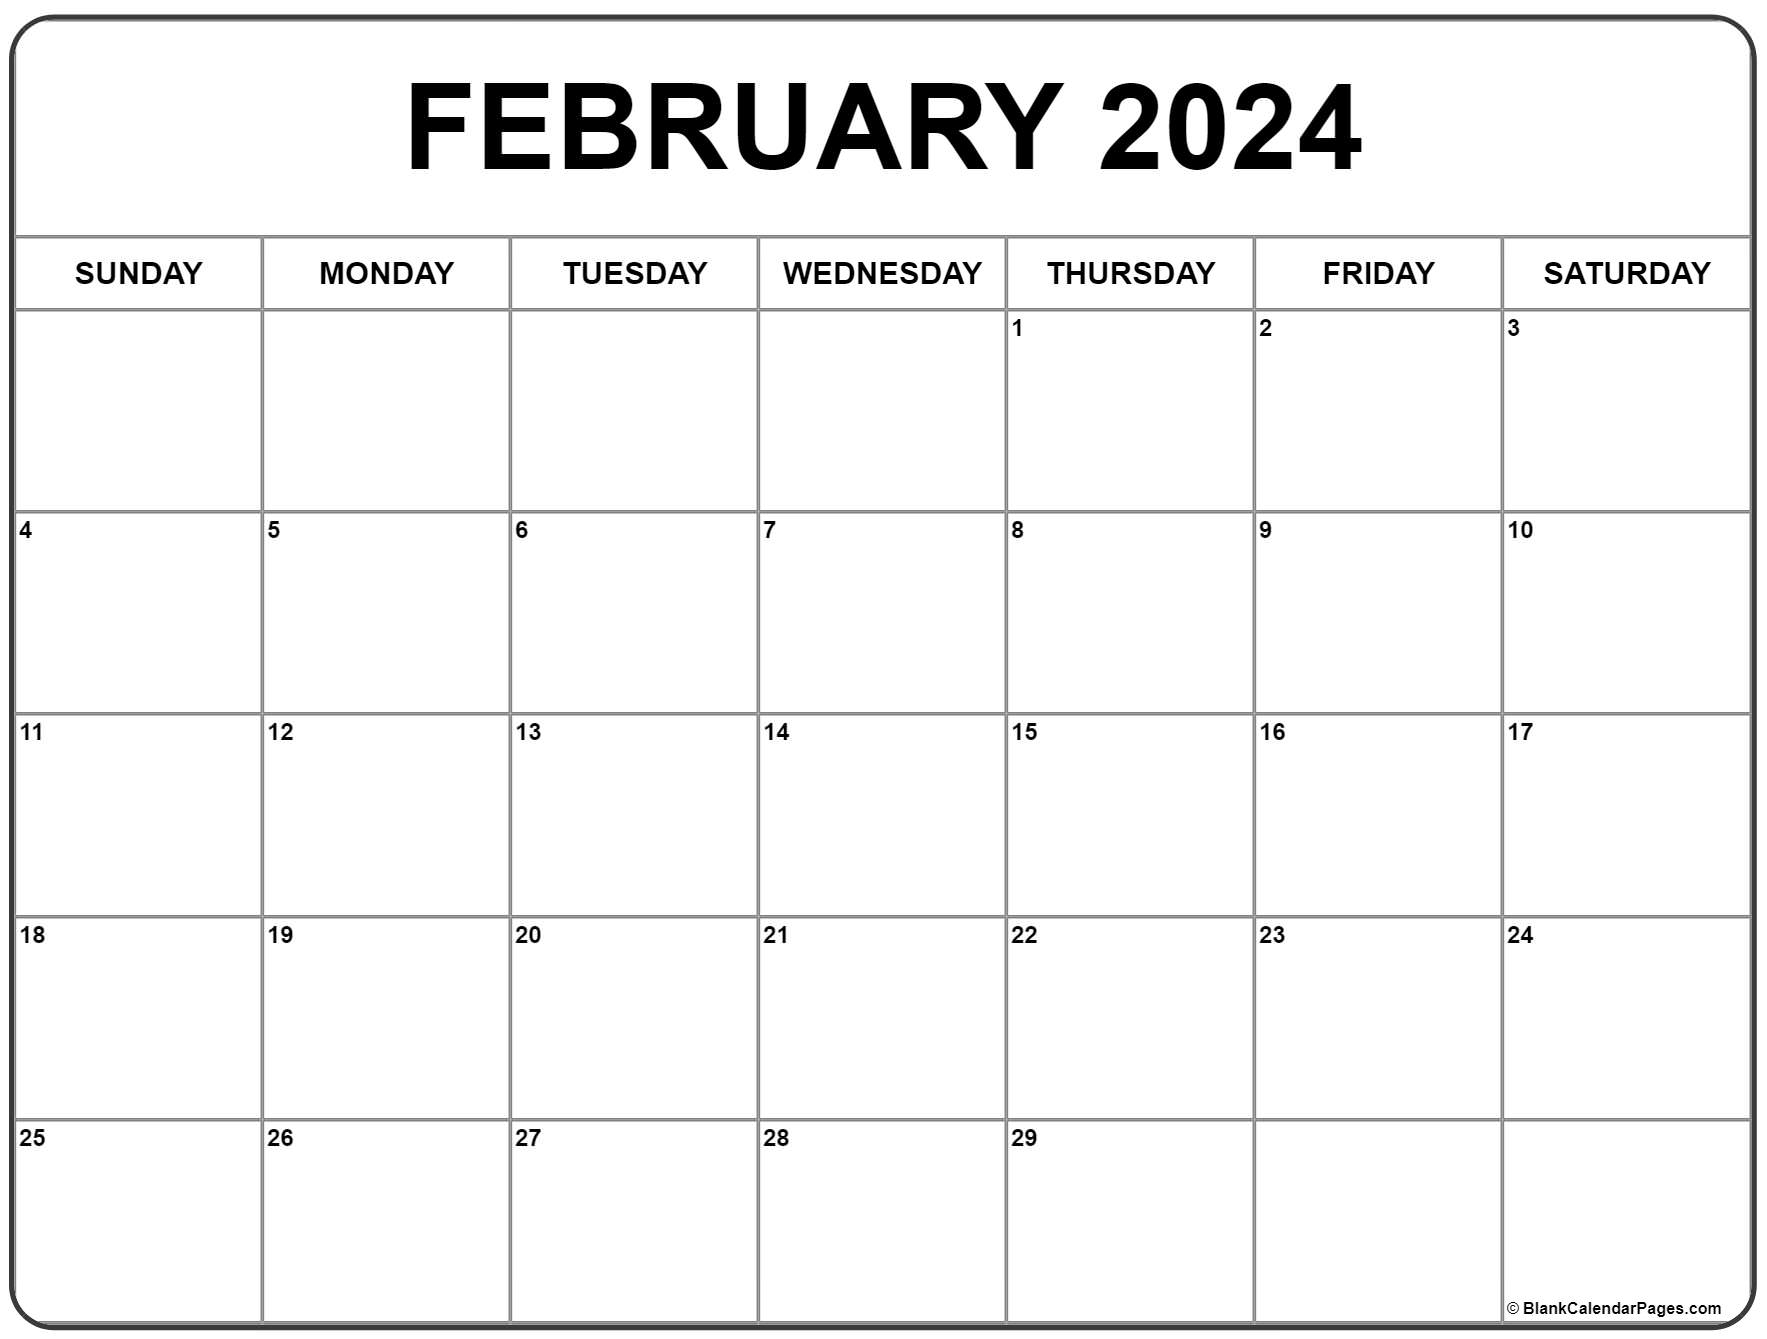 February 2024 Calendar | Free Printable Calendar for Printable Feb 2024 Calendar